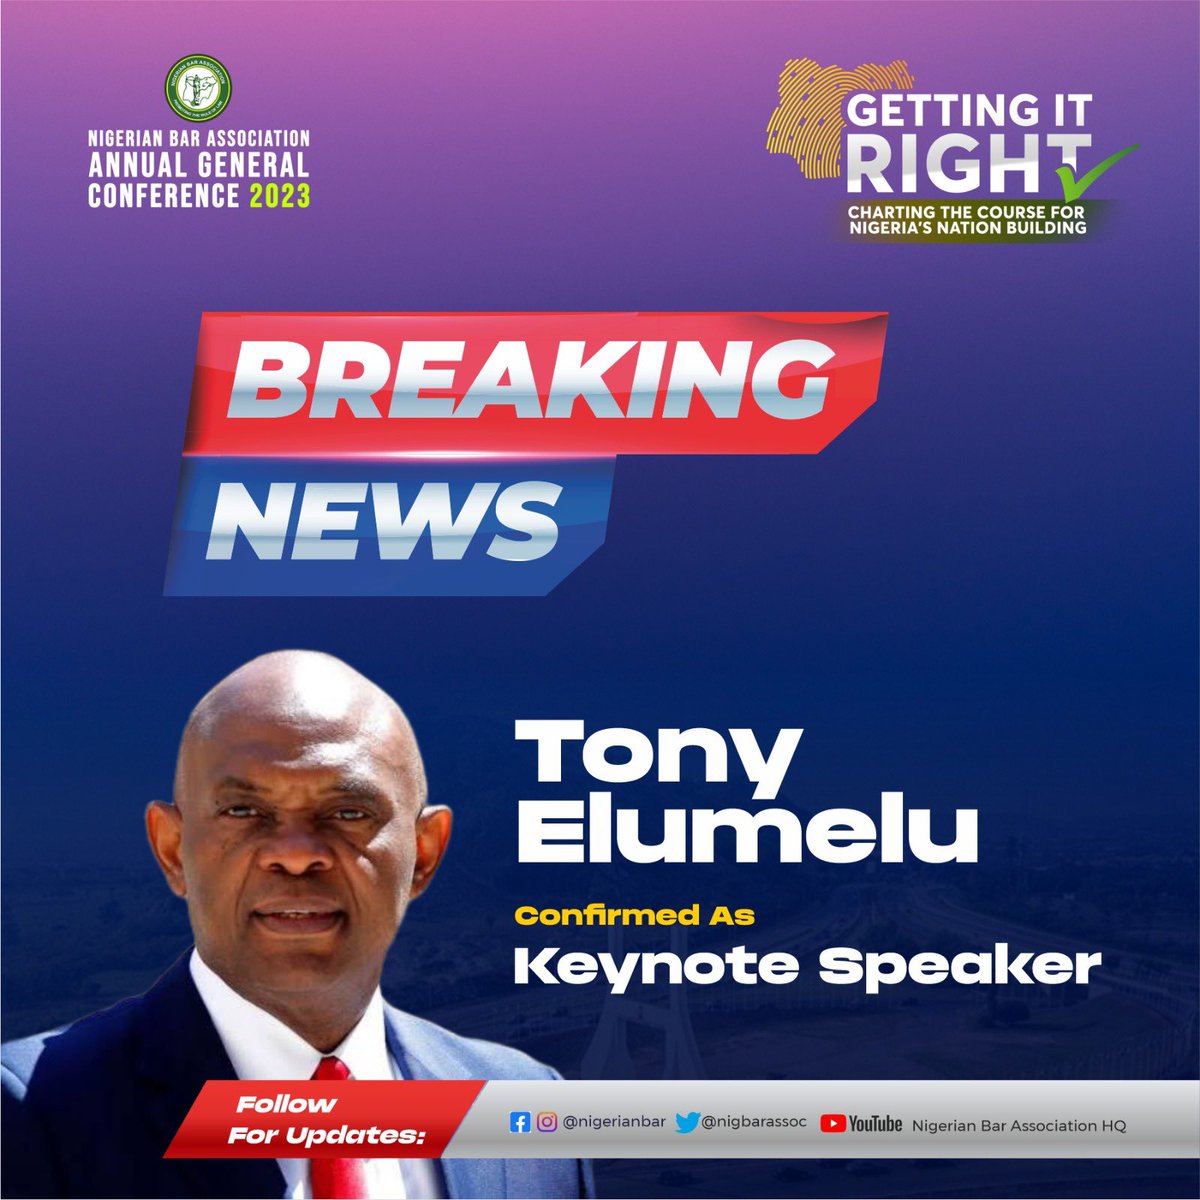 #TonyElumelu is confirmed as the keynote speaker for the #NBAAGC2023 #NigerianBarAssociation